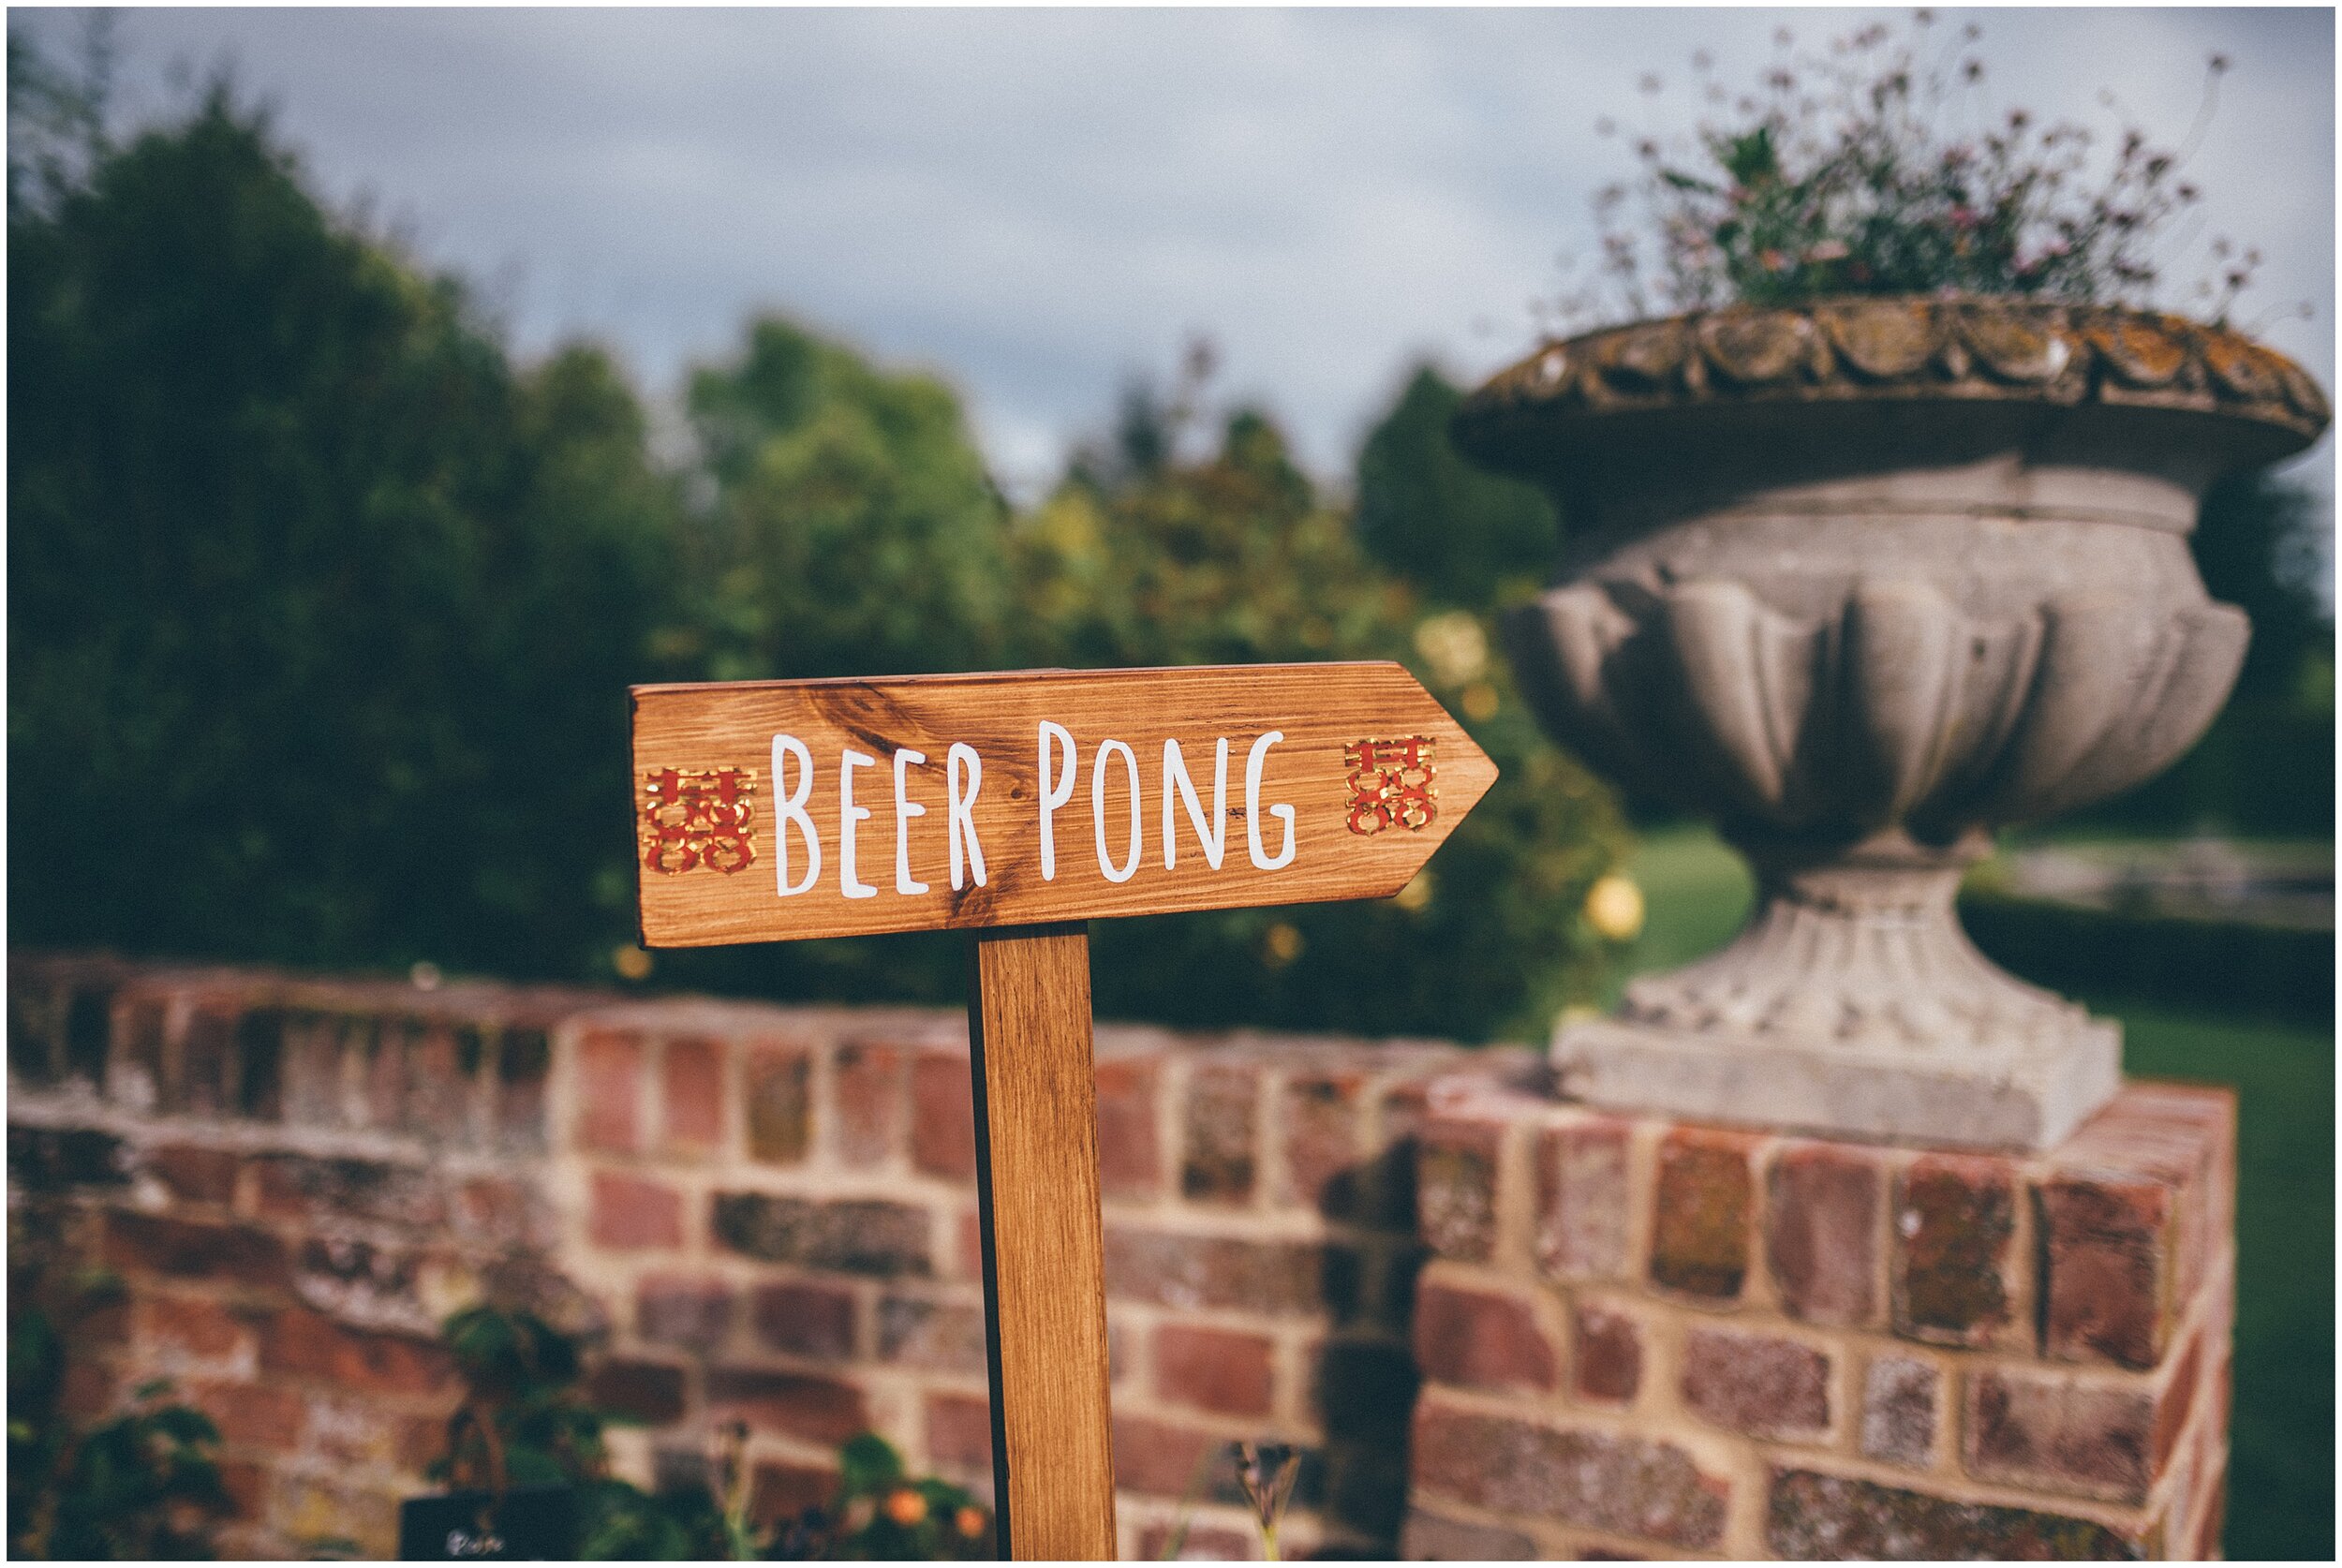 Beer pong wedding sign art outdoor wedding.